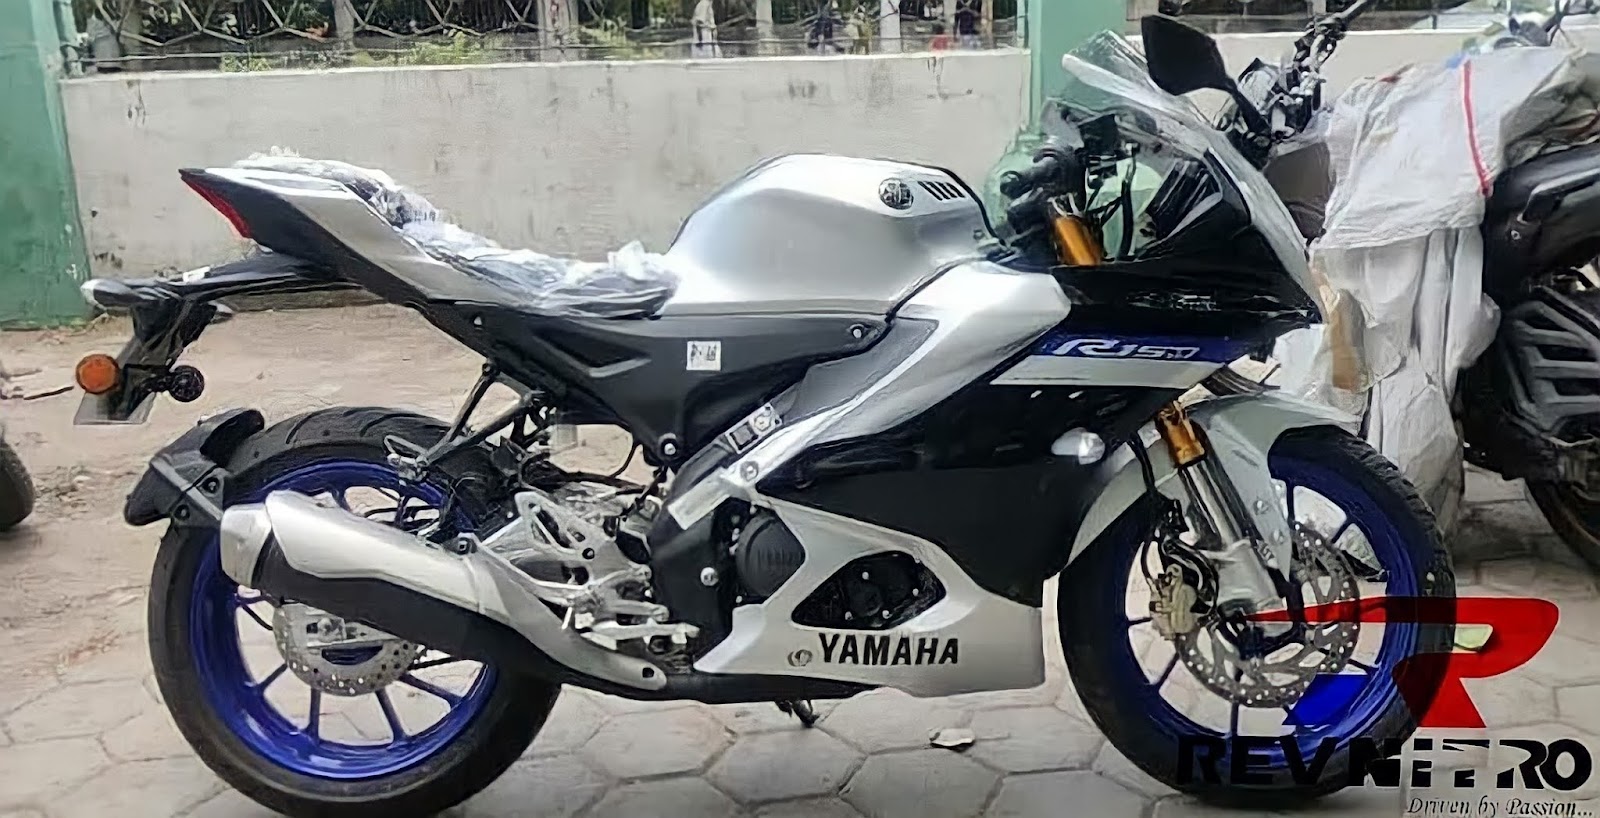 2022 Yamaha YZF R15M Image Leaked